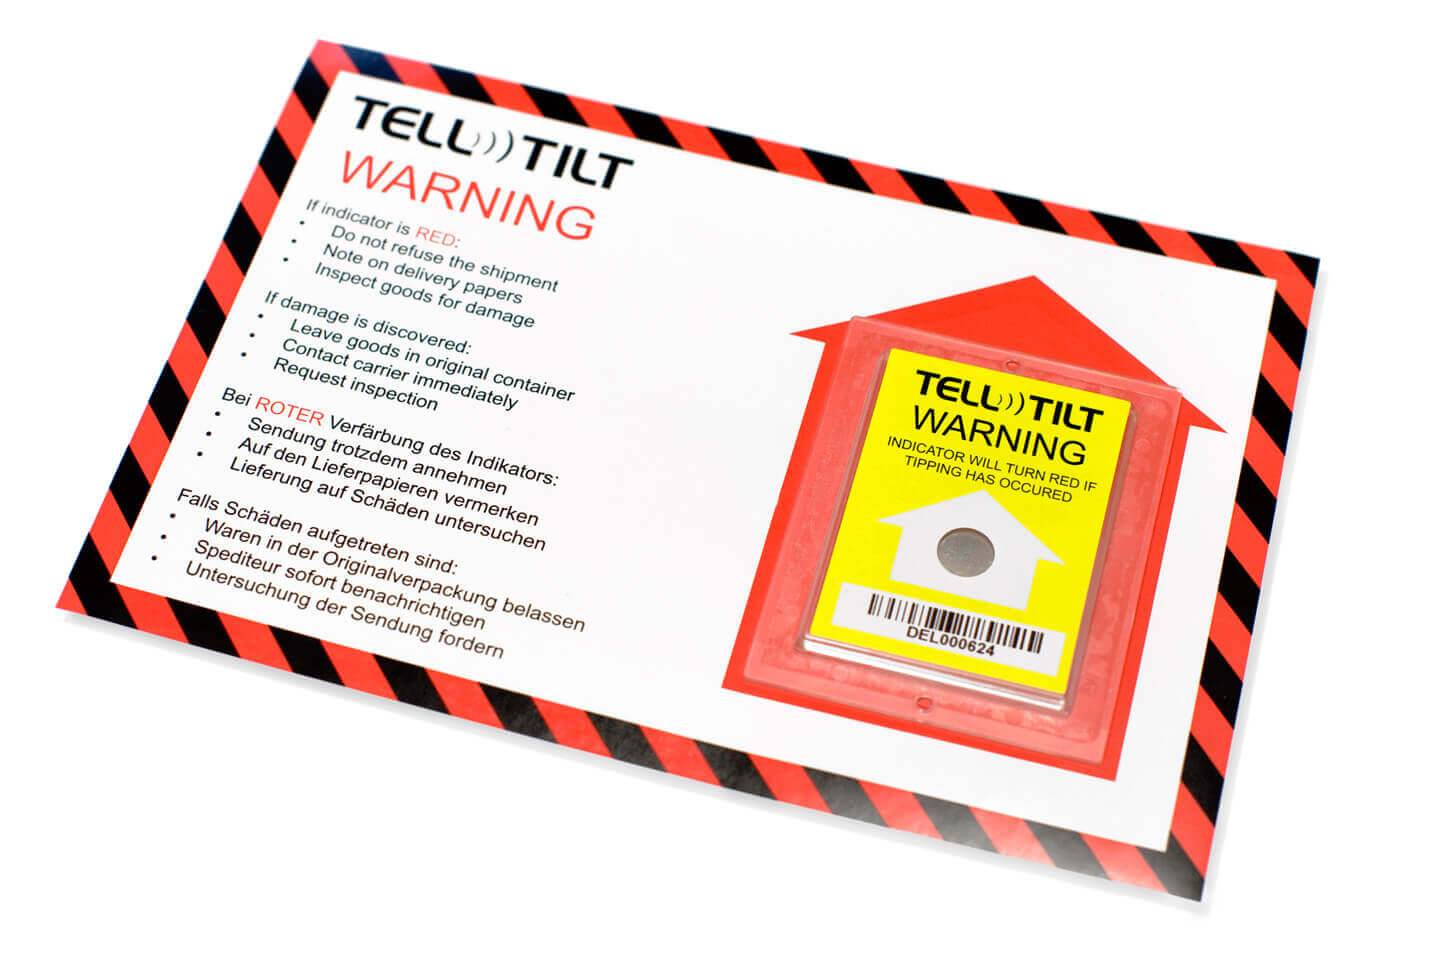 Tell-Tilt-kantelindicator